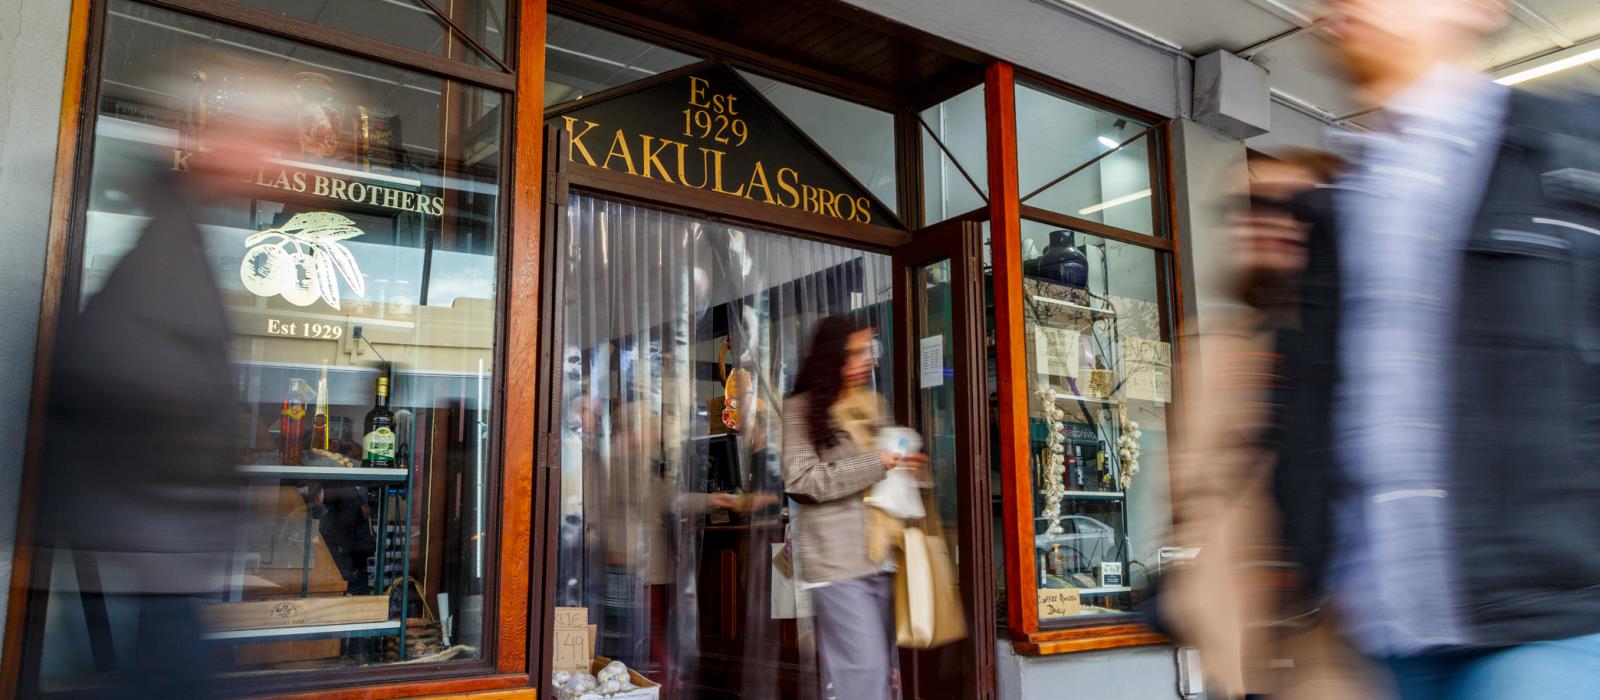 Kakulas brothers store